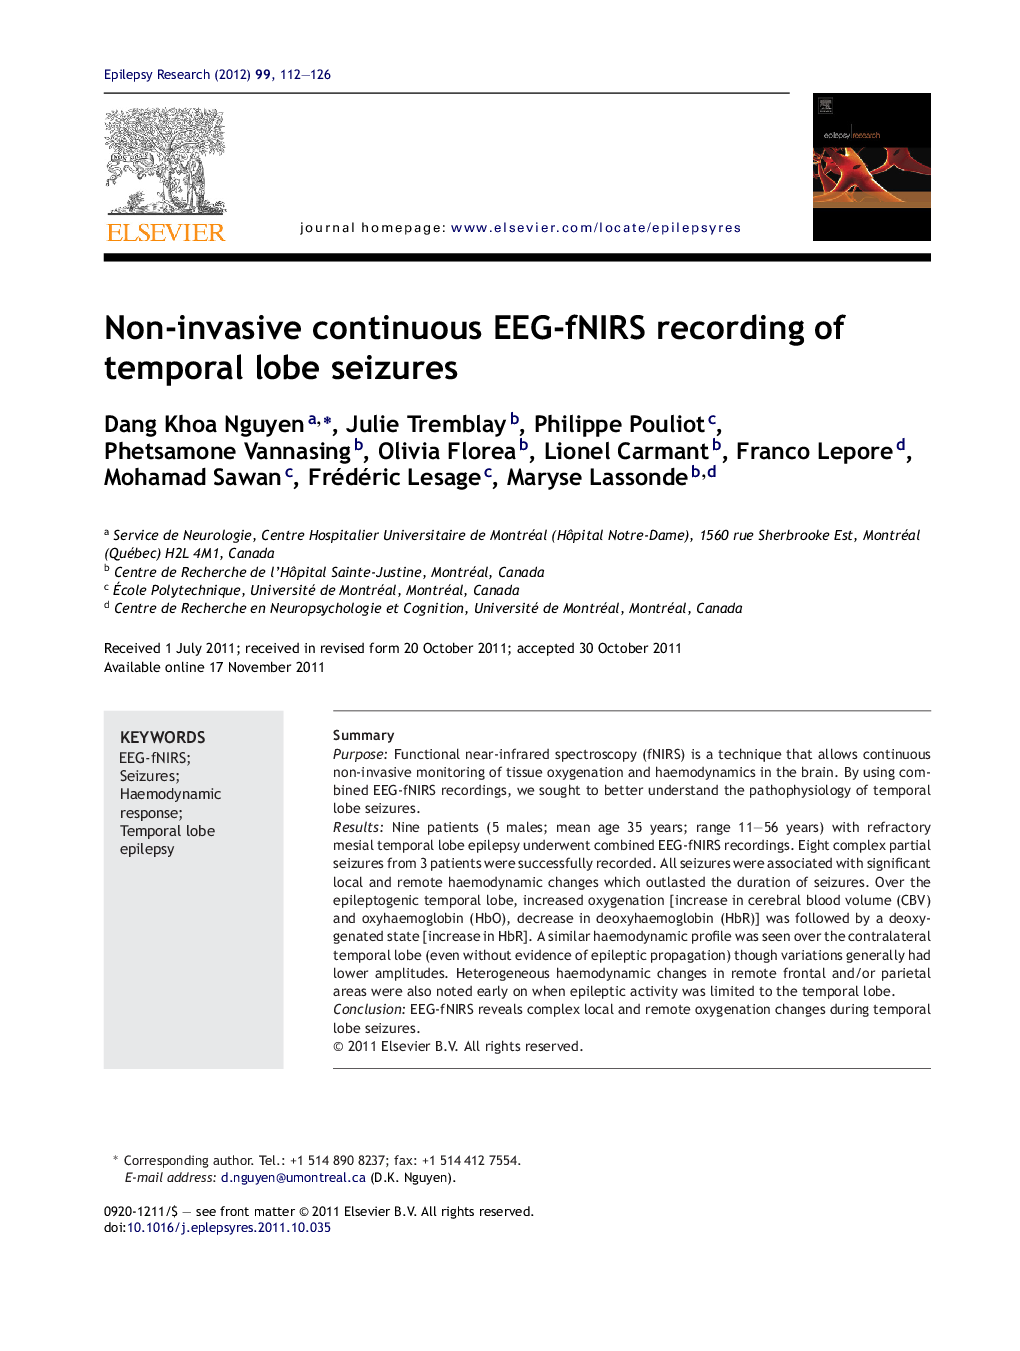 Non-invasive continuous EEG-fNIRS recording of temporal lobe seizures